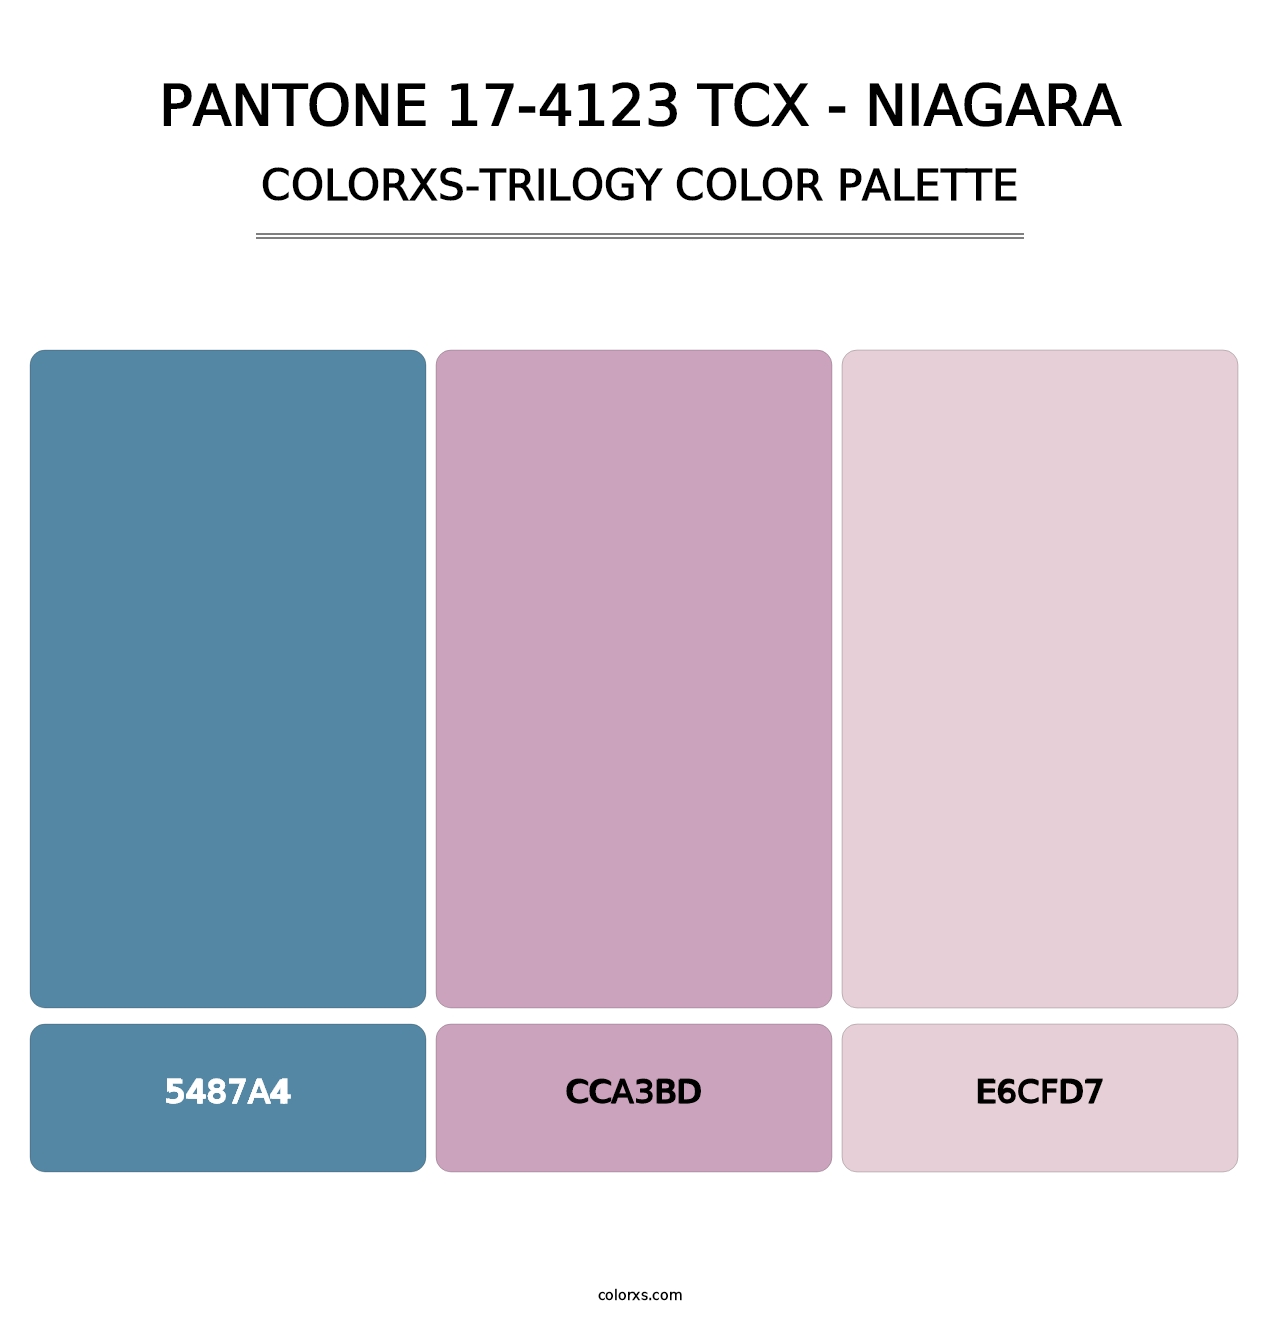 PANTONE 17-4123 TCX - Niagara - Colorxs Trilogy Palette